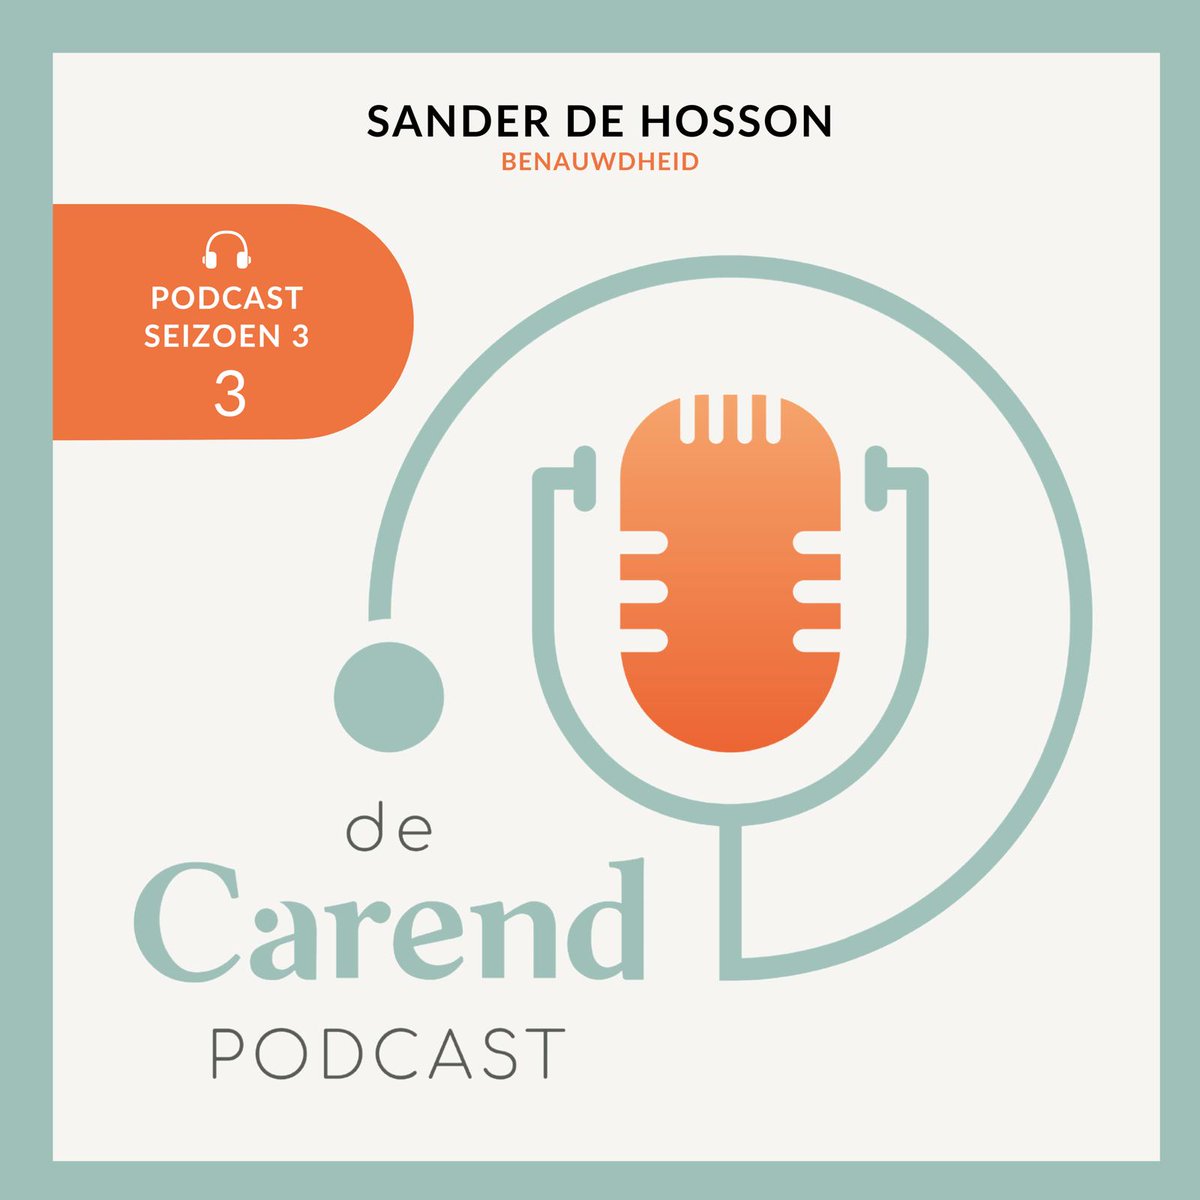 Benauwdheid kan door patiënten op vele manieren worden ervaren. Sander de Hosson vertelt je alles over benauwdheid in de palliatieve fase in een nieuwe aflevering van de Carendpodcast:
carend.nl/artikel/de-car…

#palliatievezorg #NPPZII #podcast